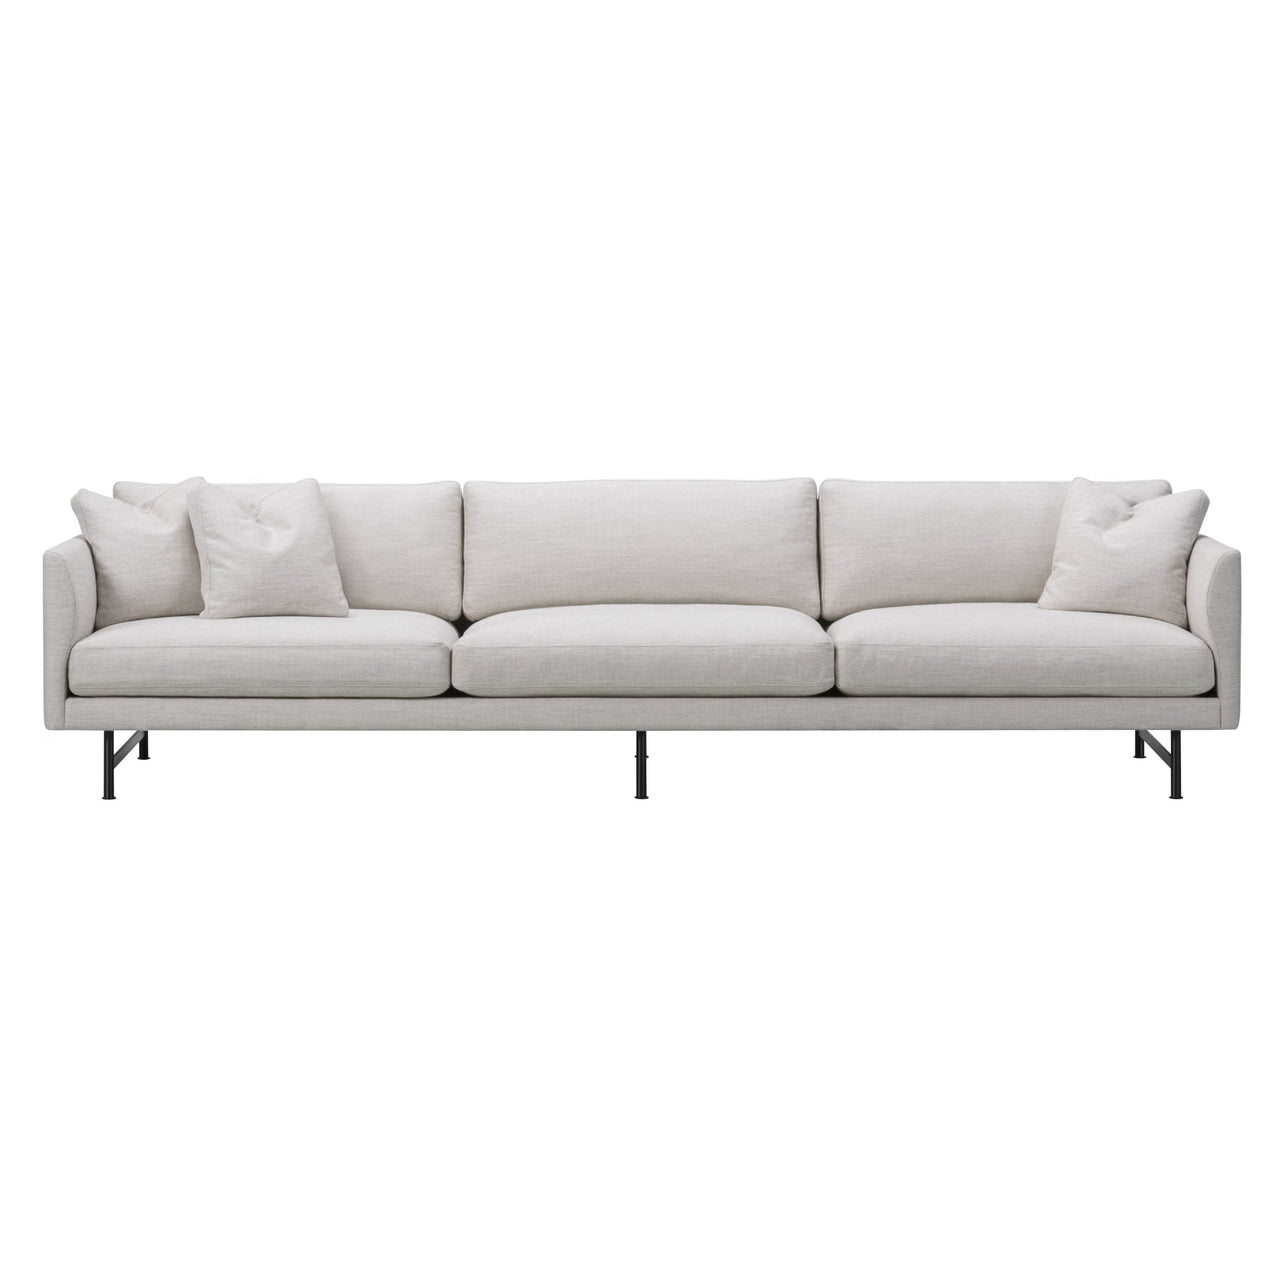 Calmo 3 Seater Sofa: Metal Base + Large - 116.1